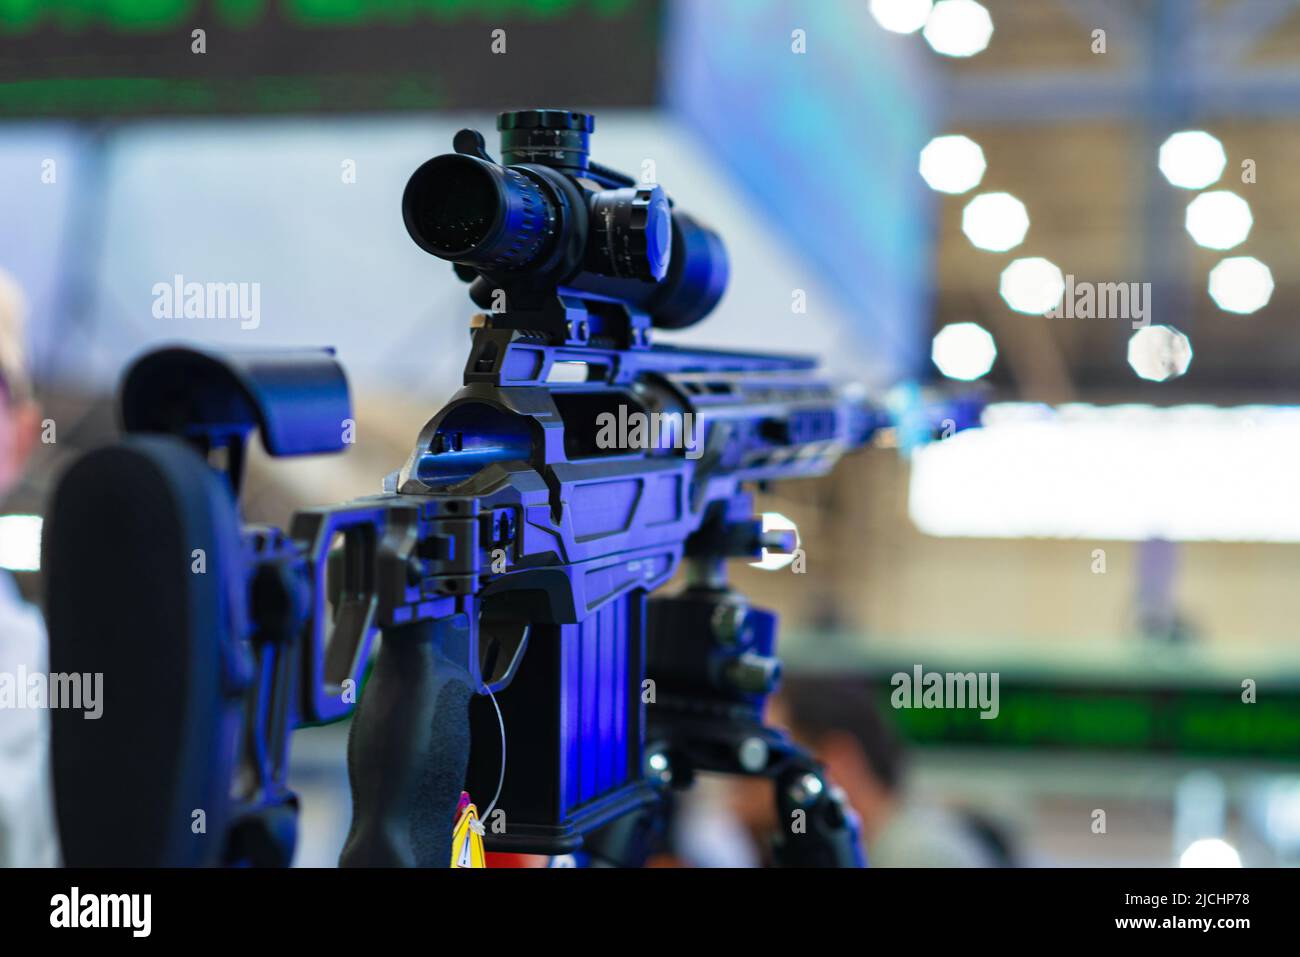 Automatisches Gewehr mit Teleskopausblick. Stockfoto